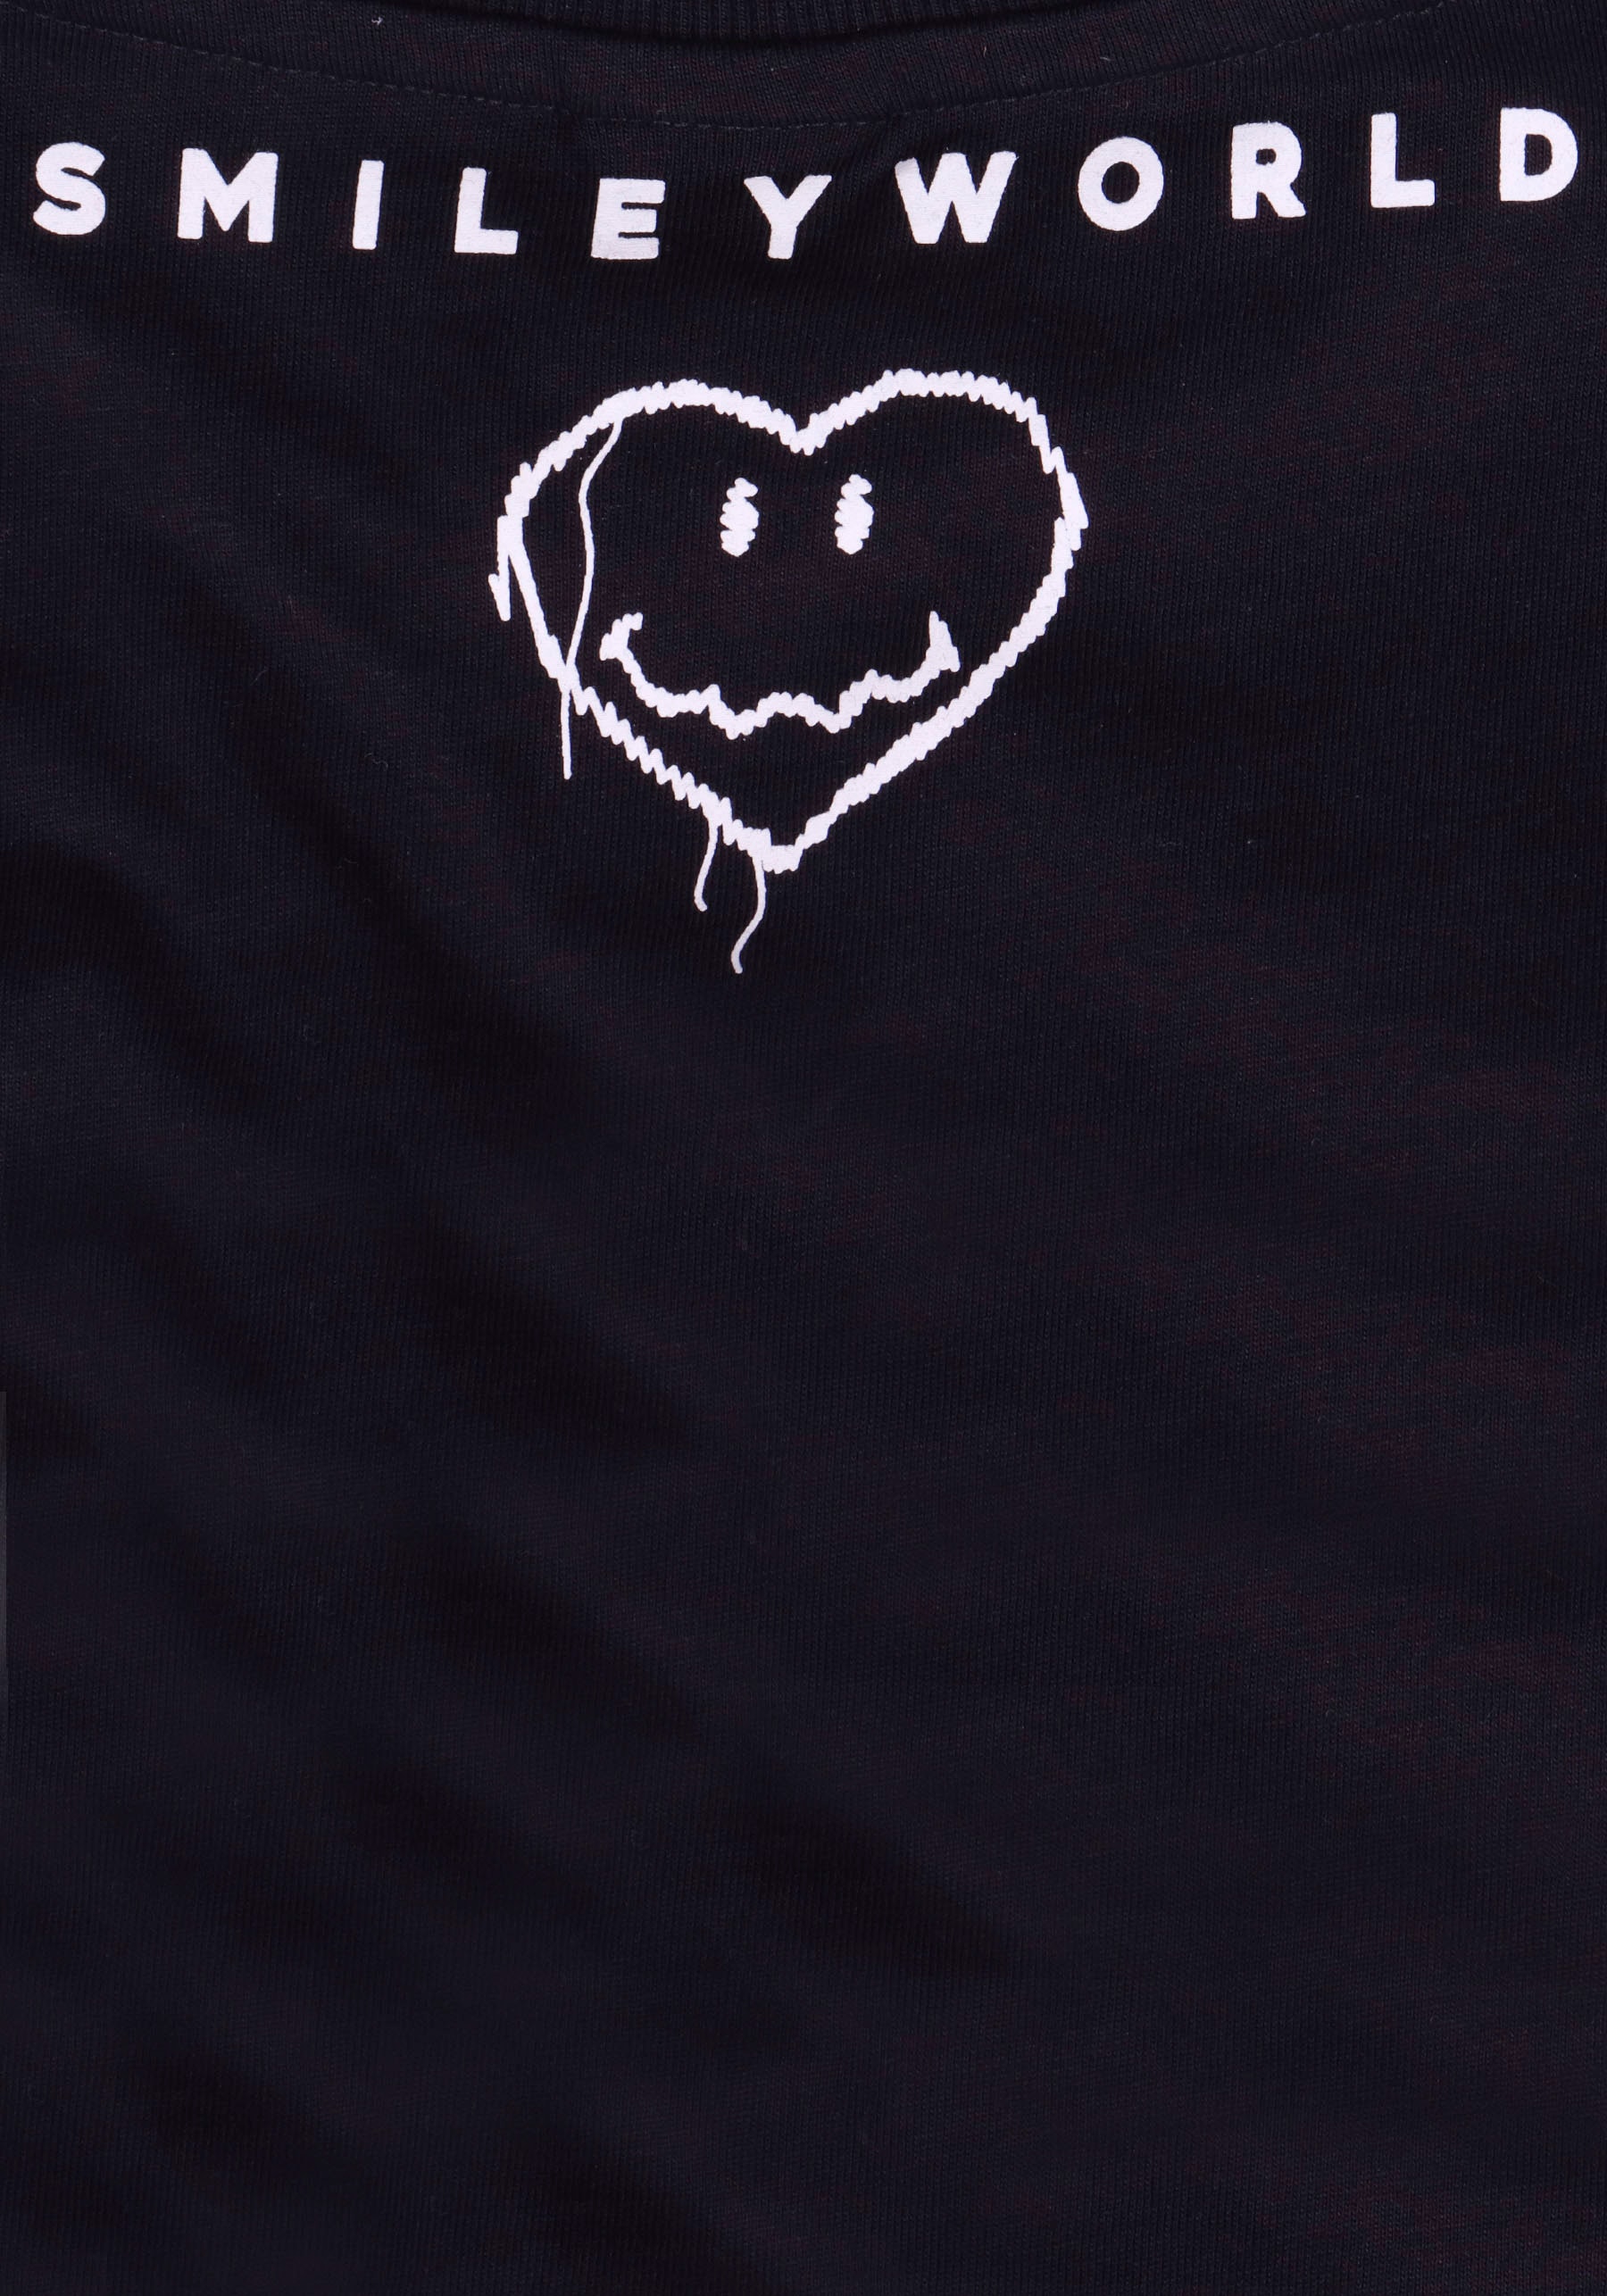 Capelli New York T-Shirt, mit Herzen- Smiley World